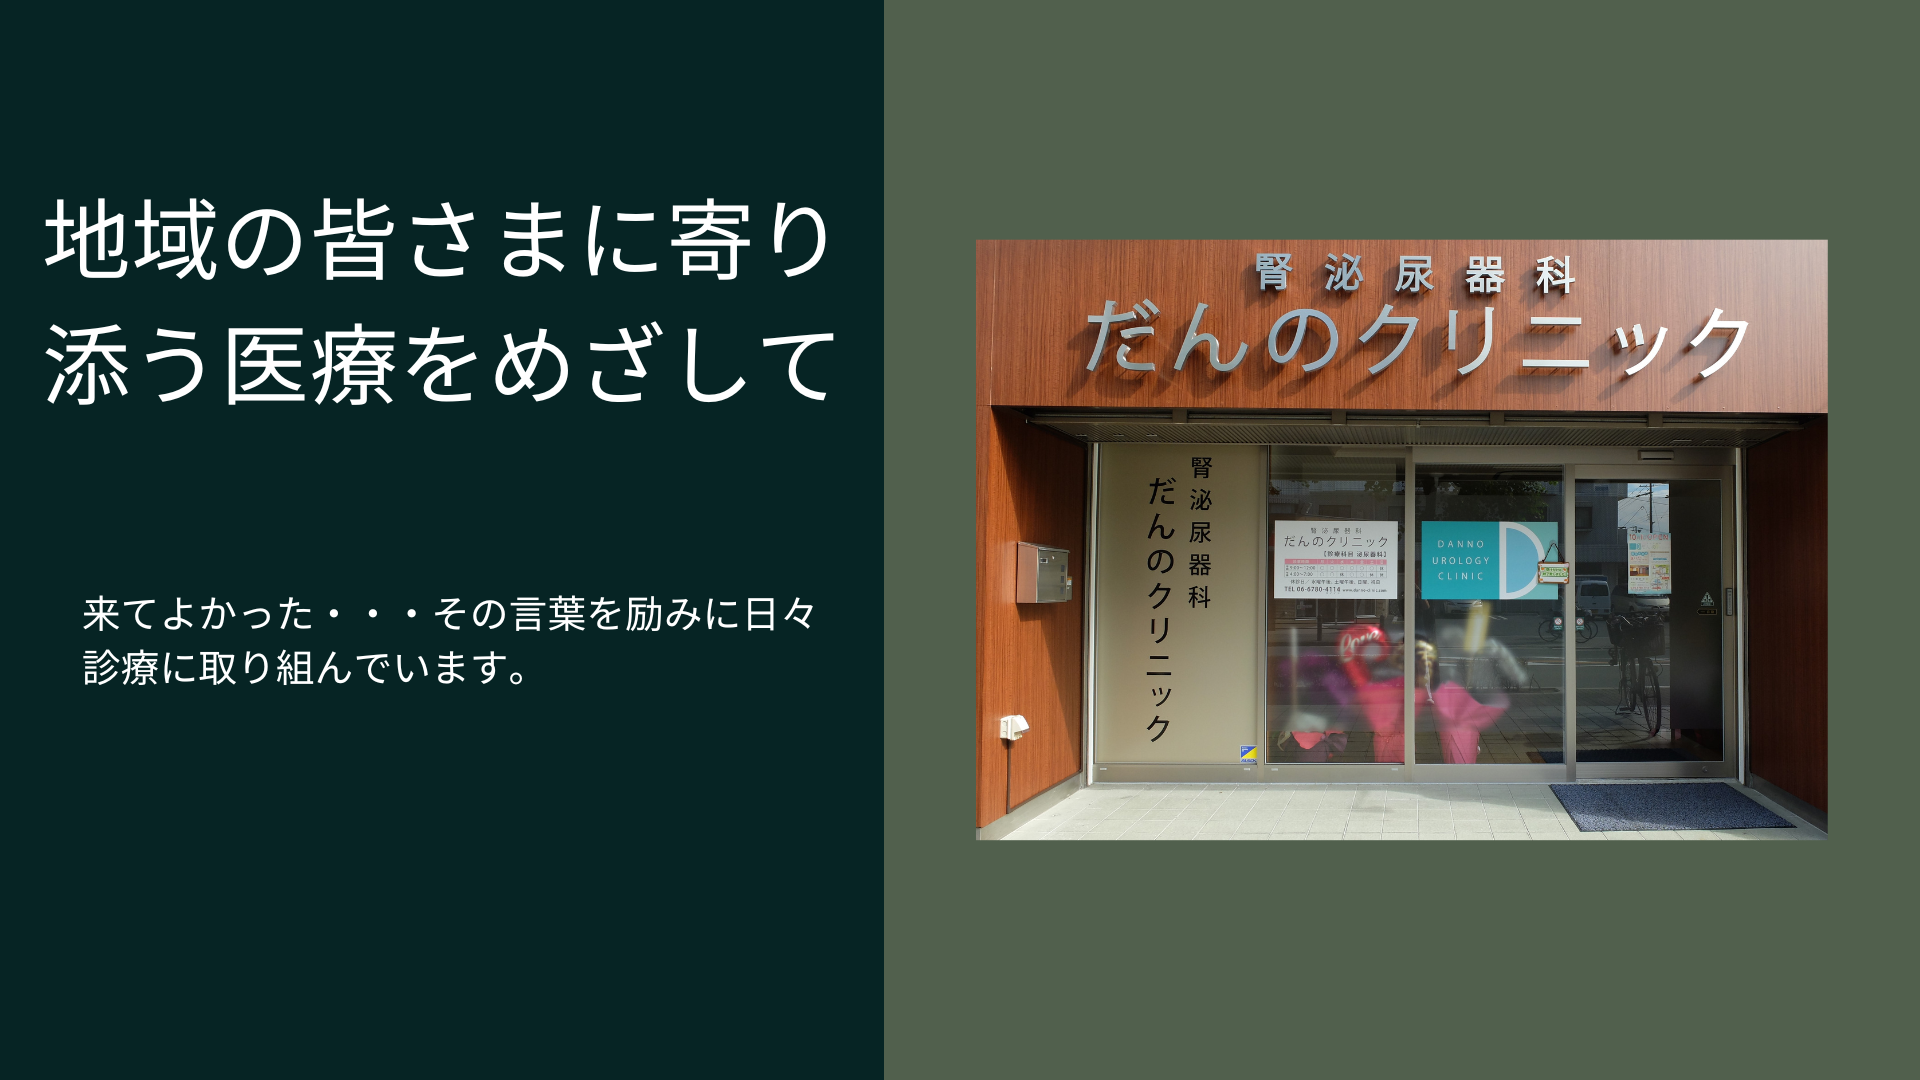 腎泌尿器科だんのクリニック | 大阪市鶴見区の泌尿器科専門クリニック。腎泌尿器科だんのクリニックです。